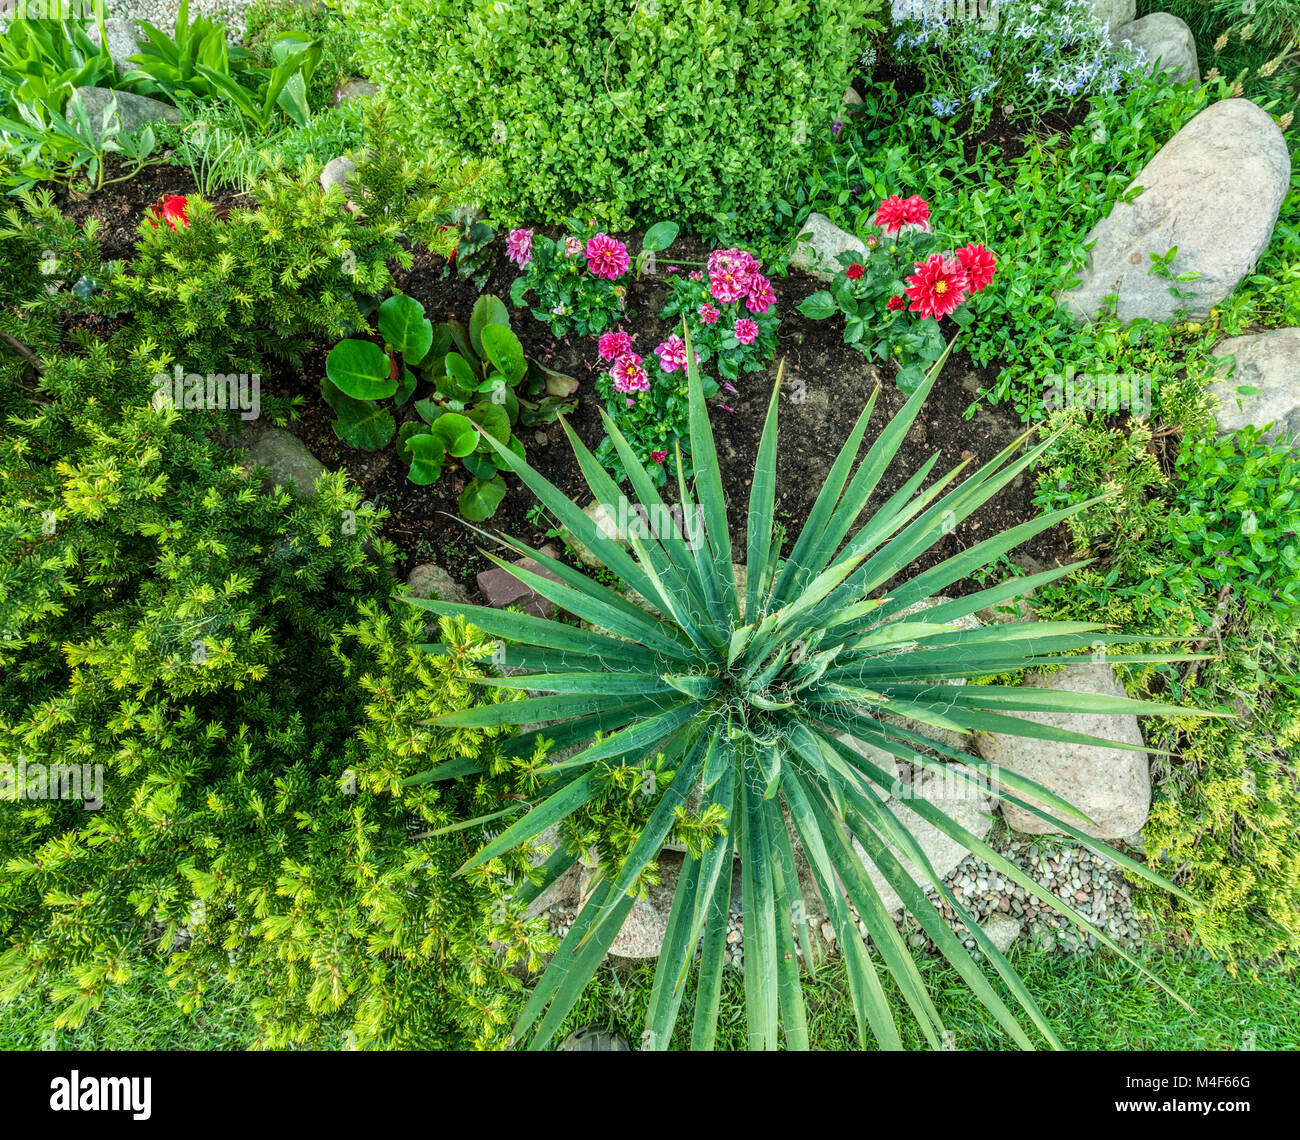 Angelegter Garten mit grünen Pflanzen, Felsen, Blumen Stockfoto